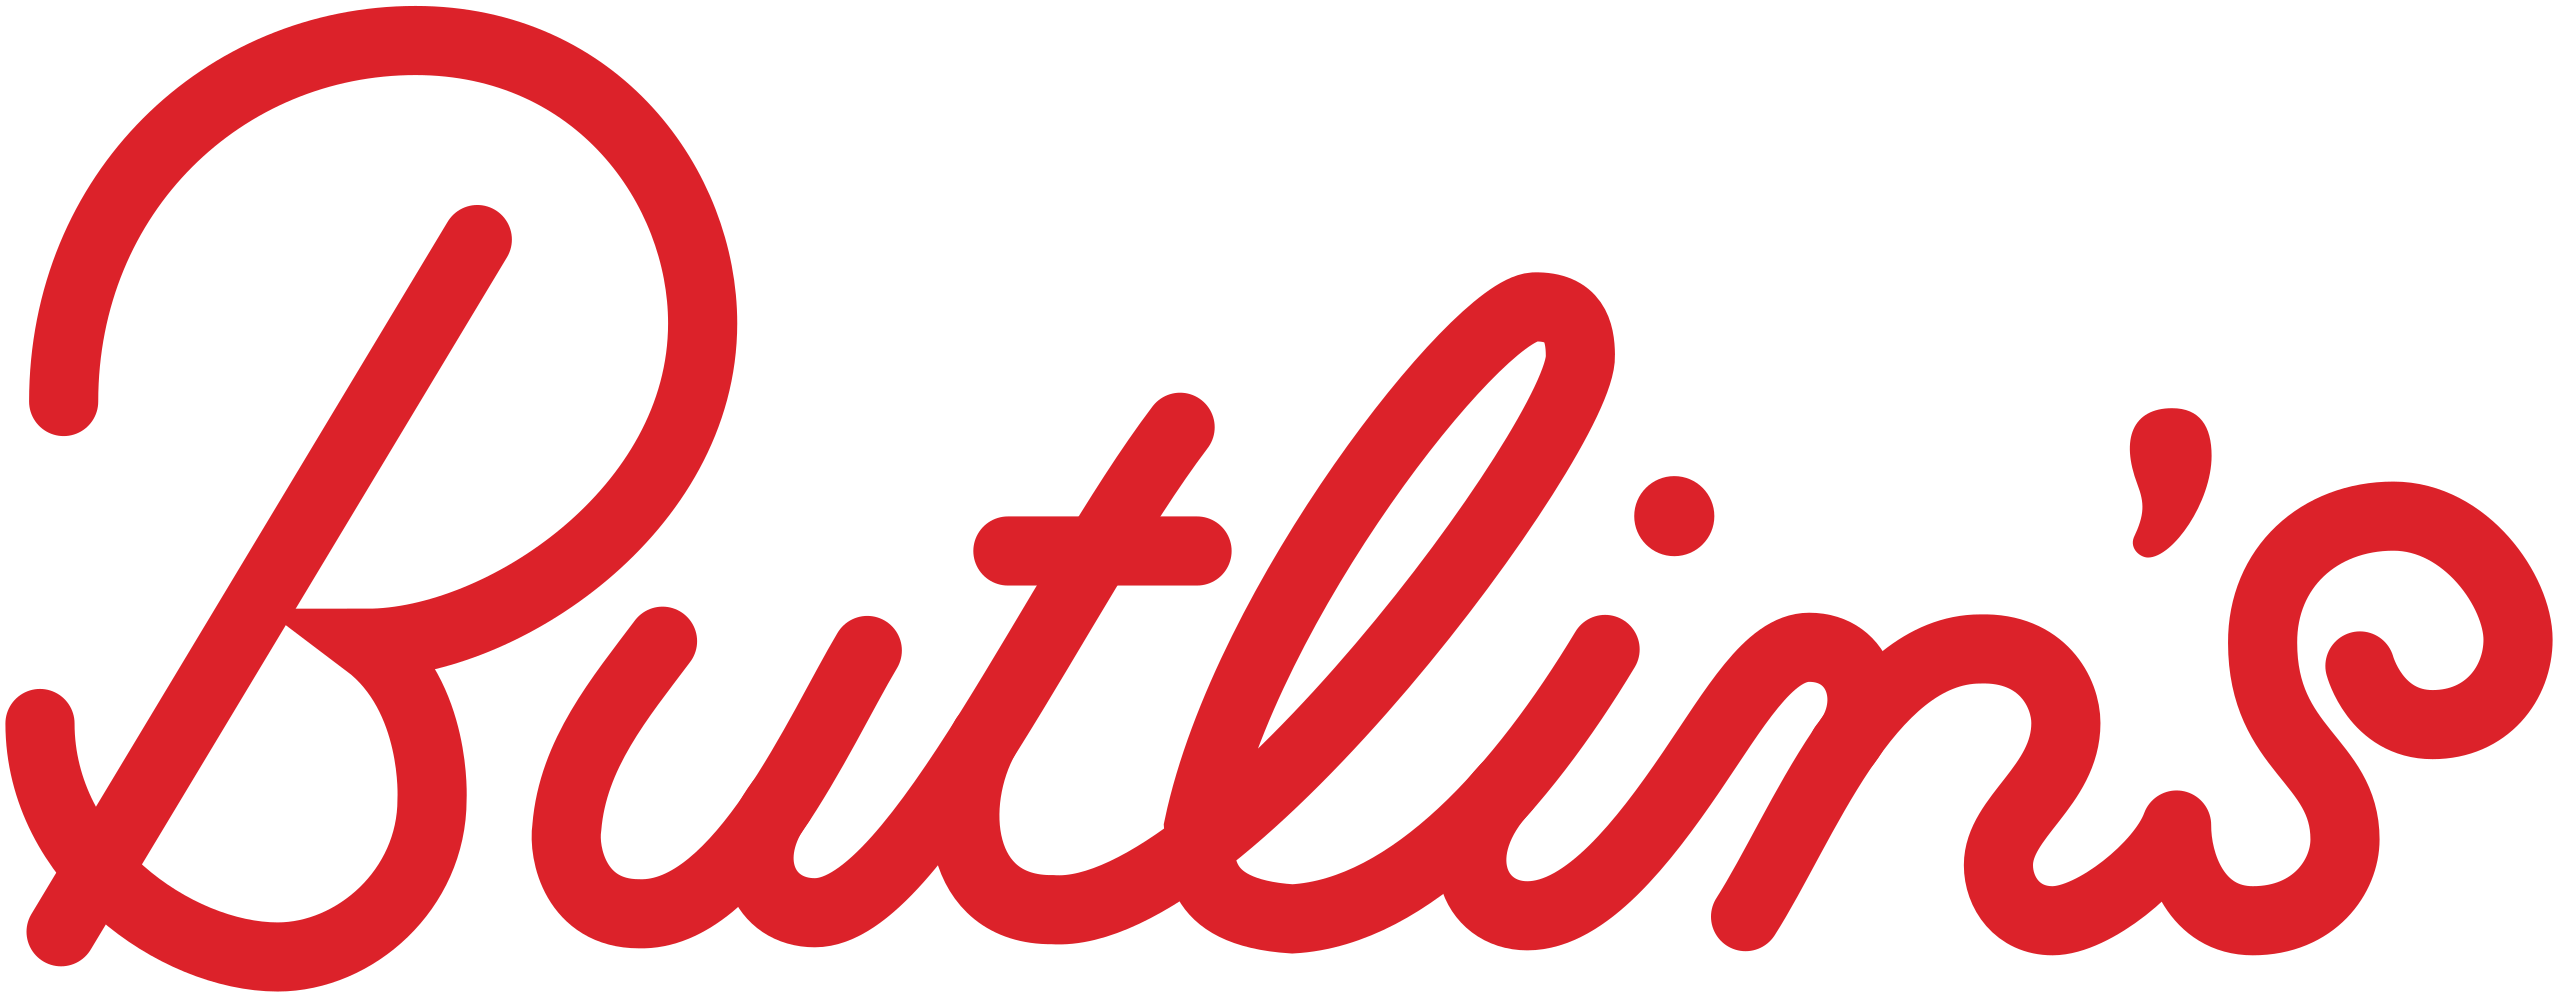 Butlins Logo